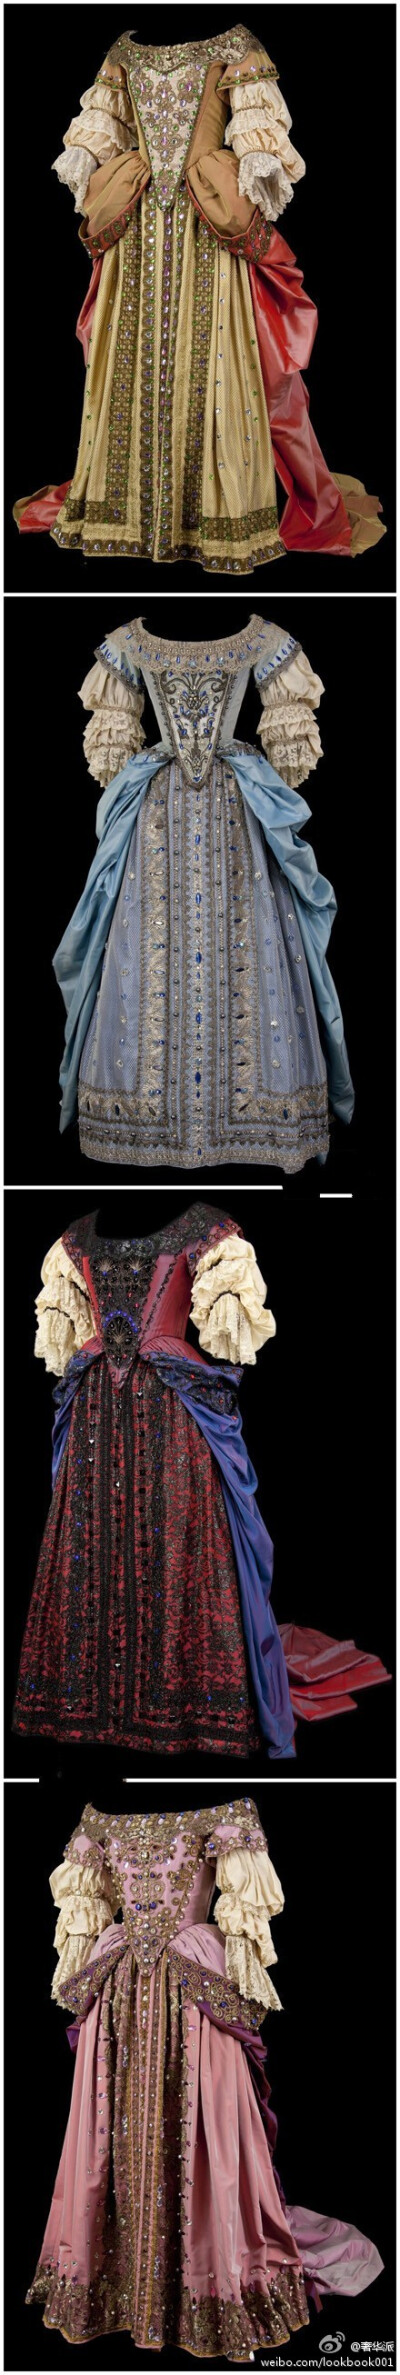 宫廷服~英国皇室的贵妇装~繁复华丽层层叠叠的中世纪风.